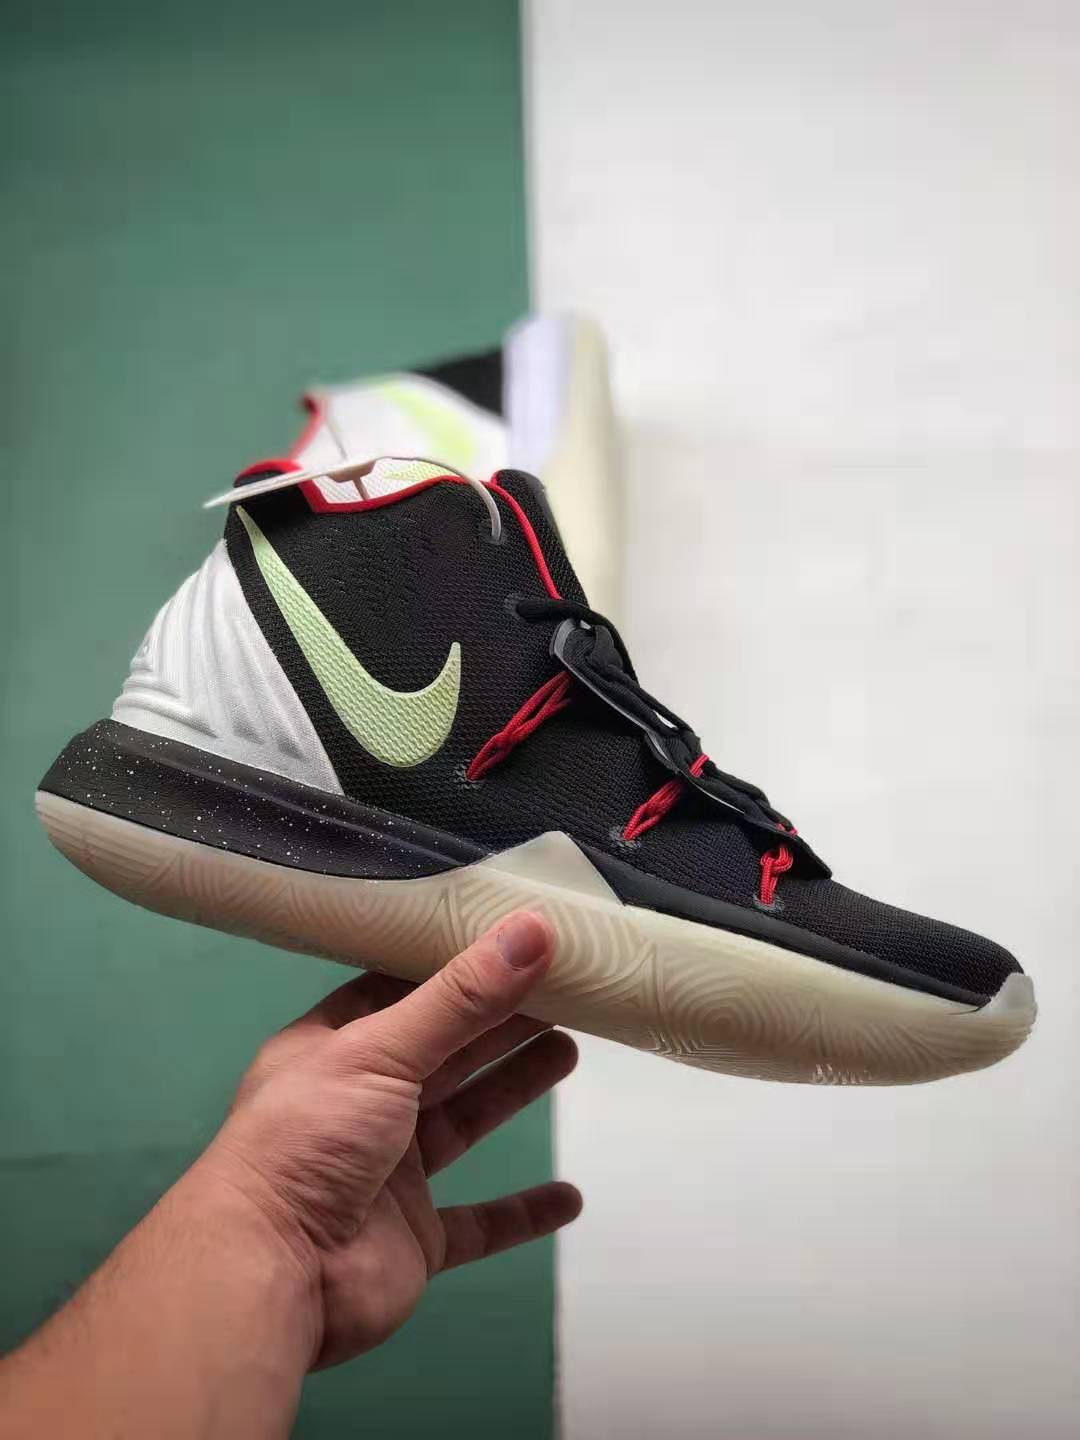 Nike Kyrie 5 Uncle Drew Black White Red - AV7917 991 | Premium Basketball Shoes